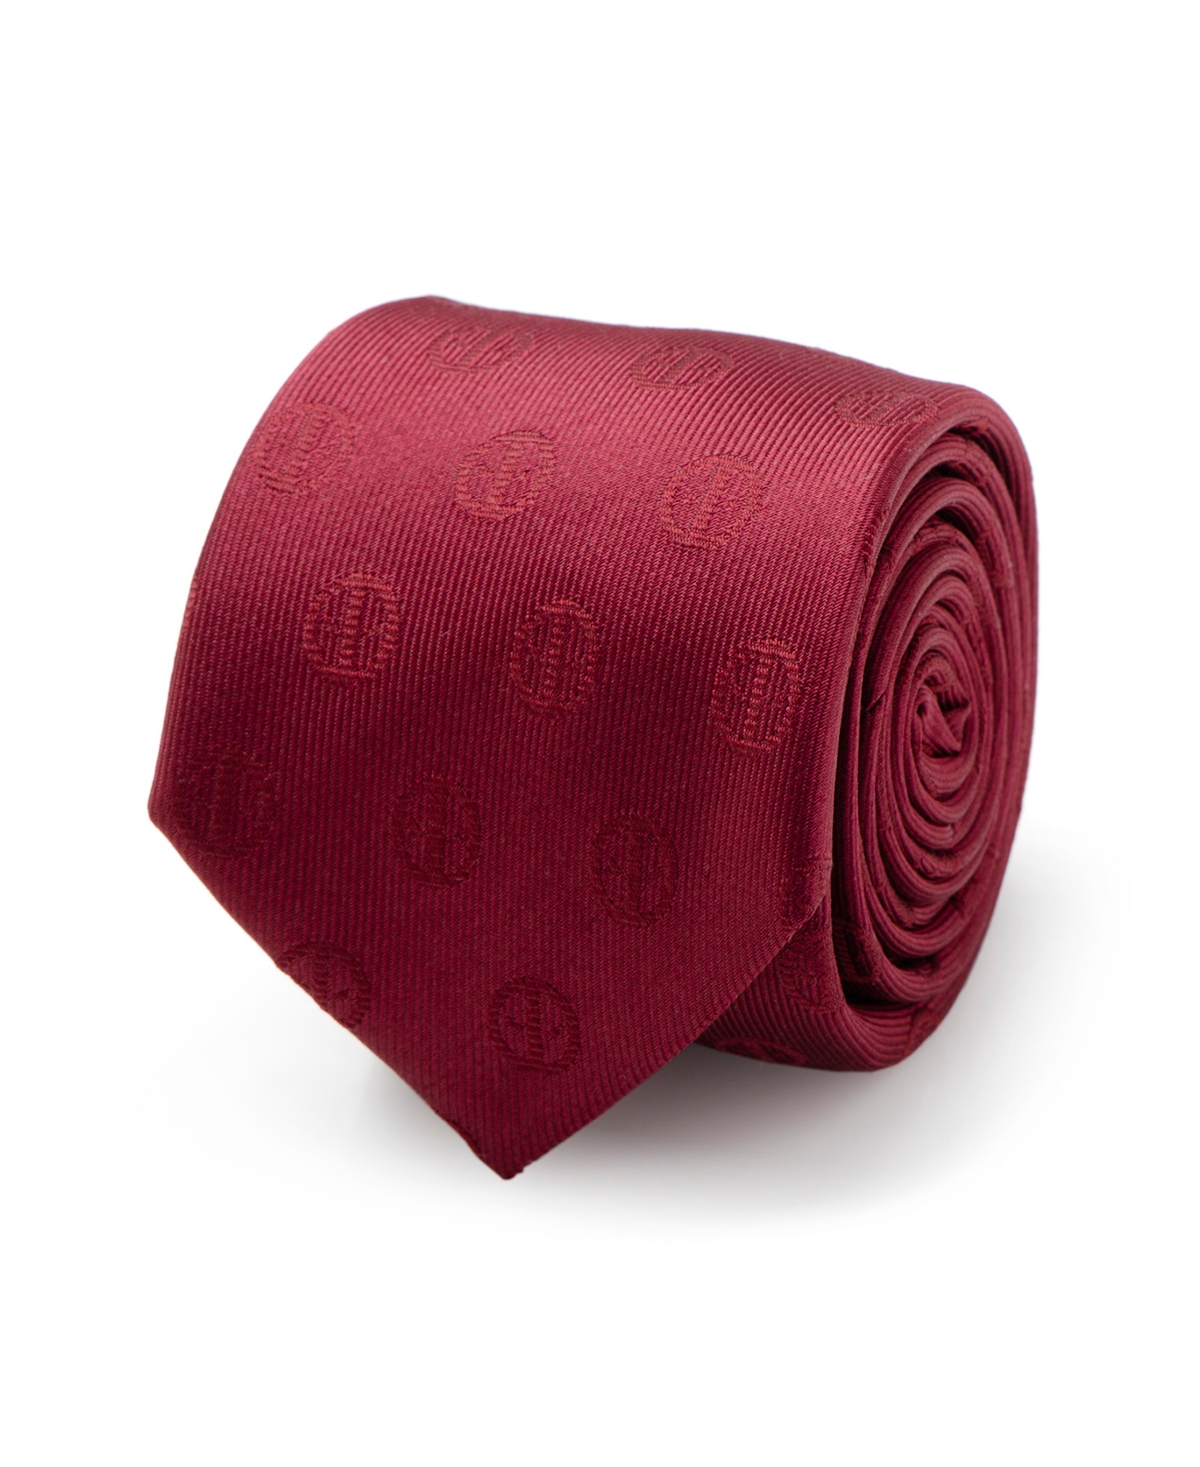 Deadpool Men's Tie - Red